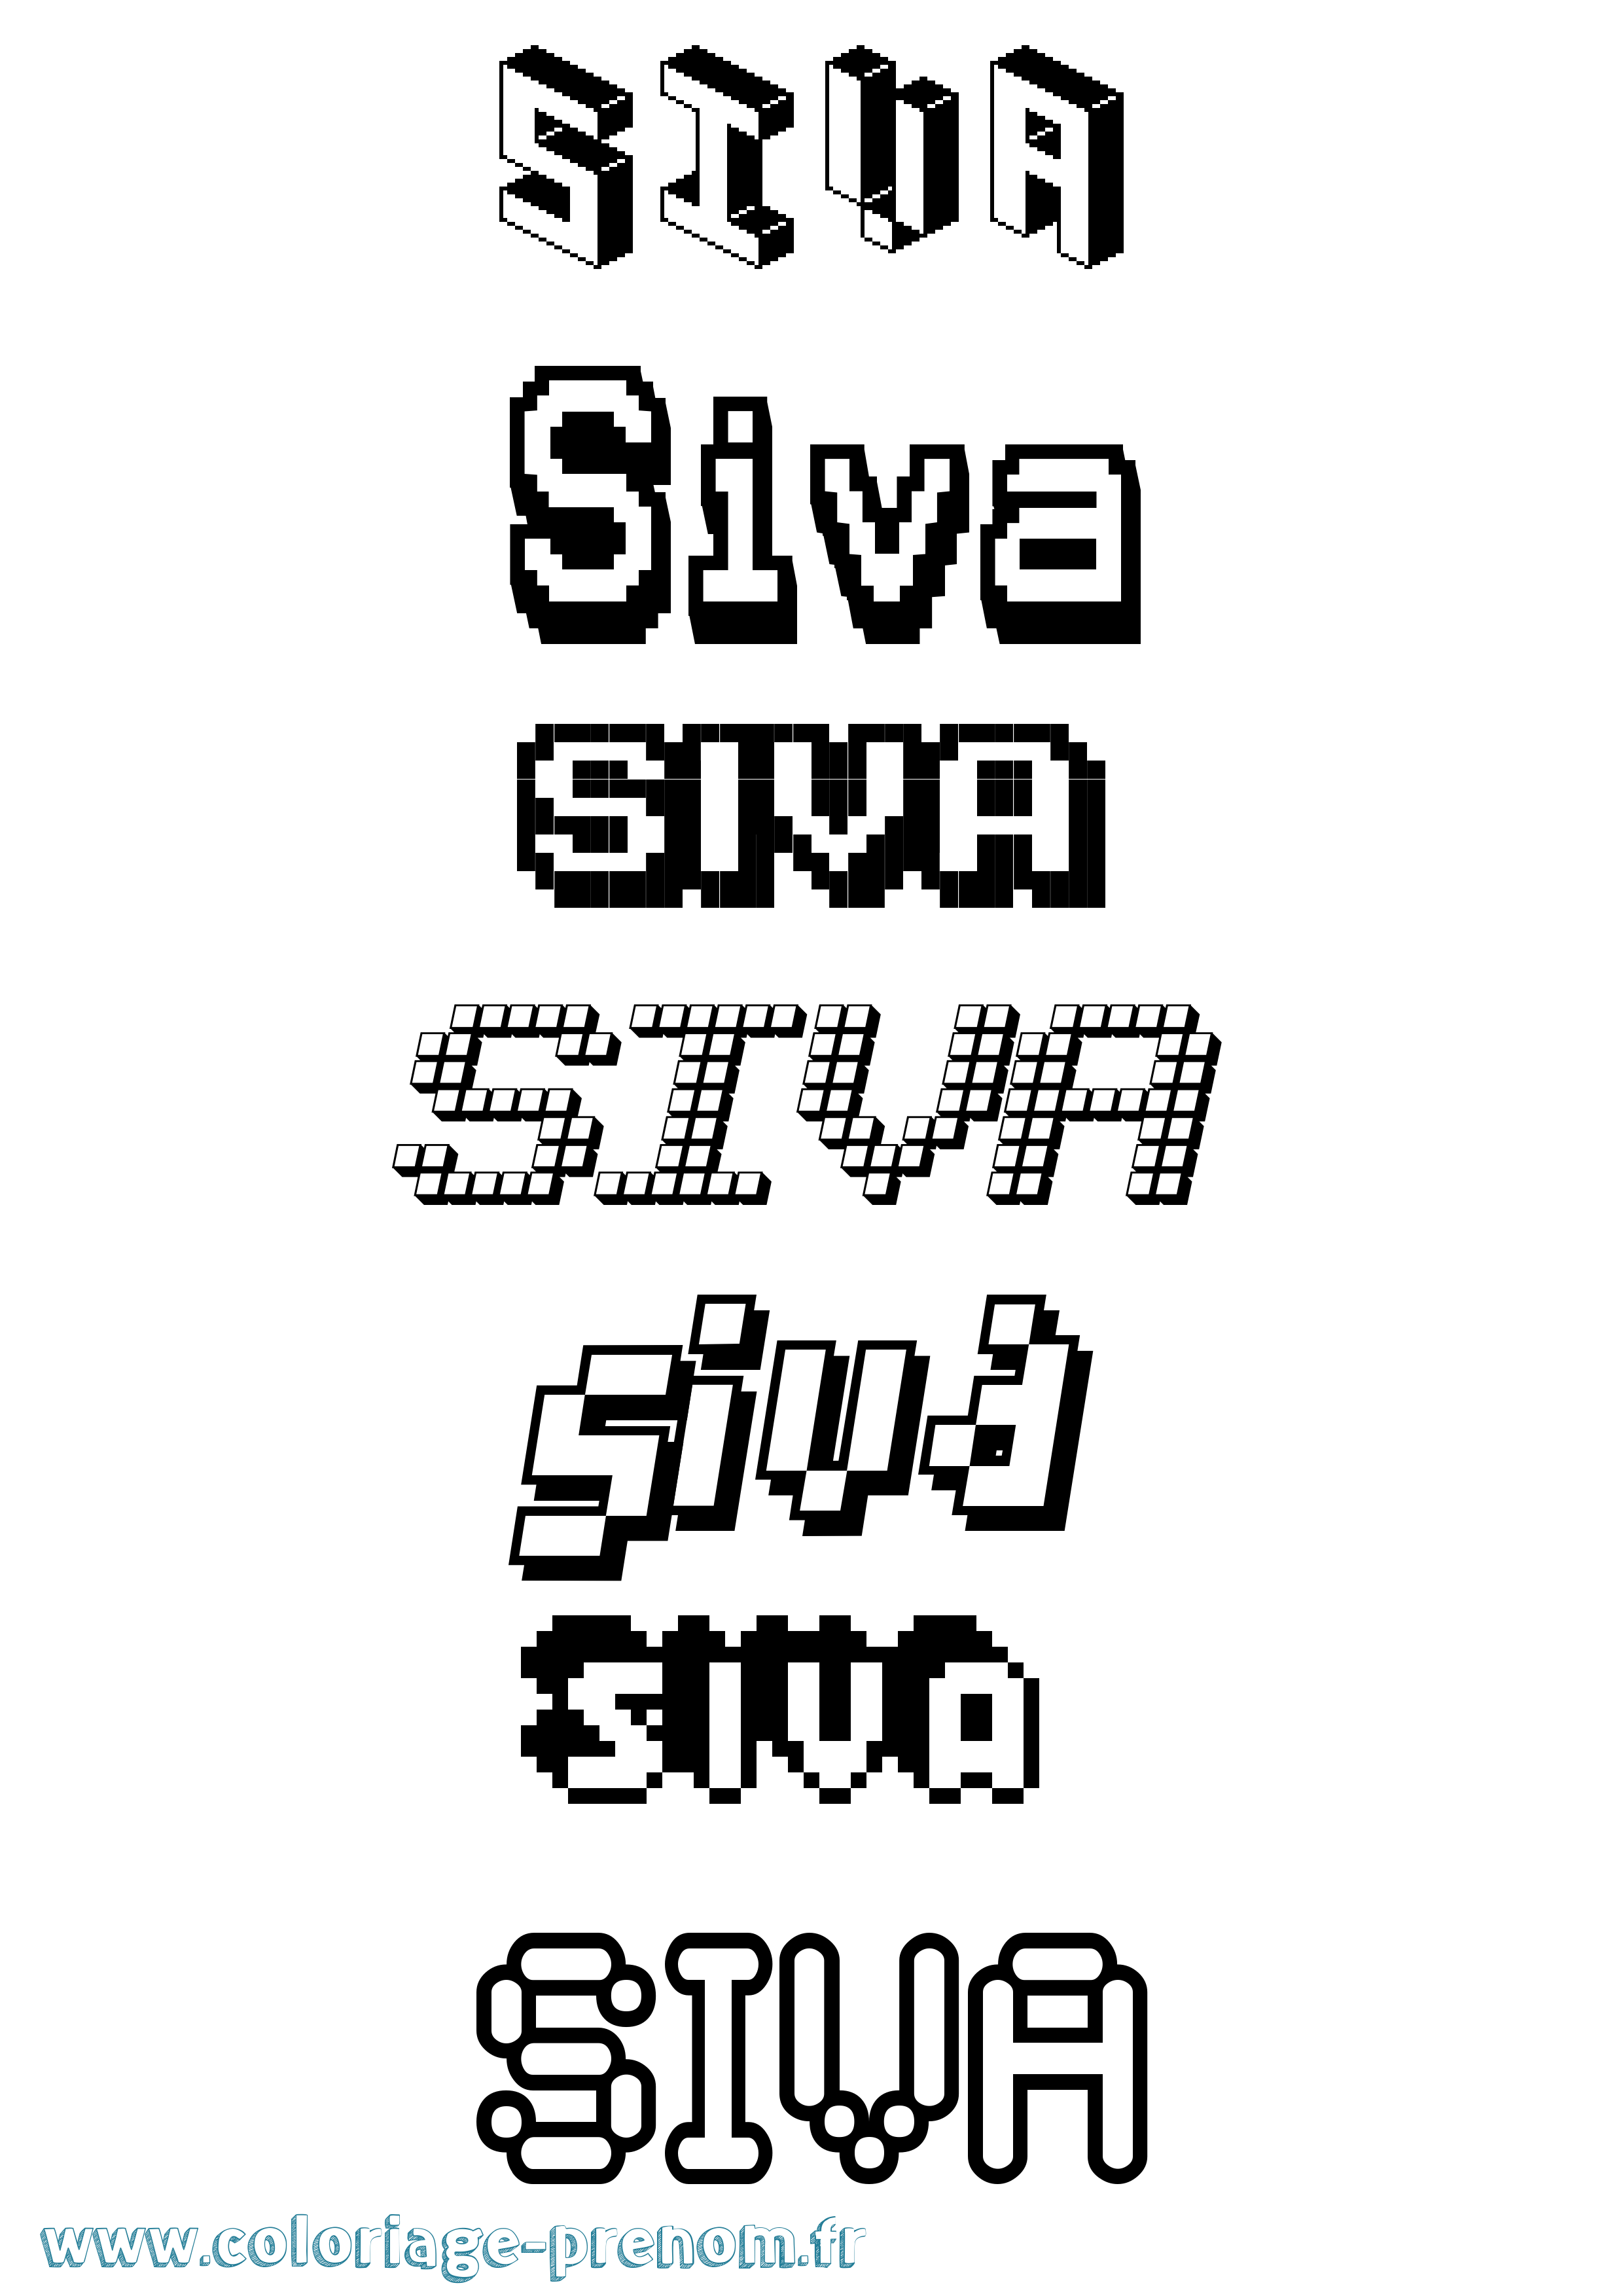 Coloriage prénom Siva Pixel